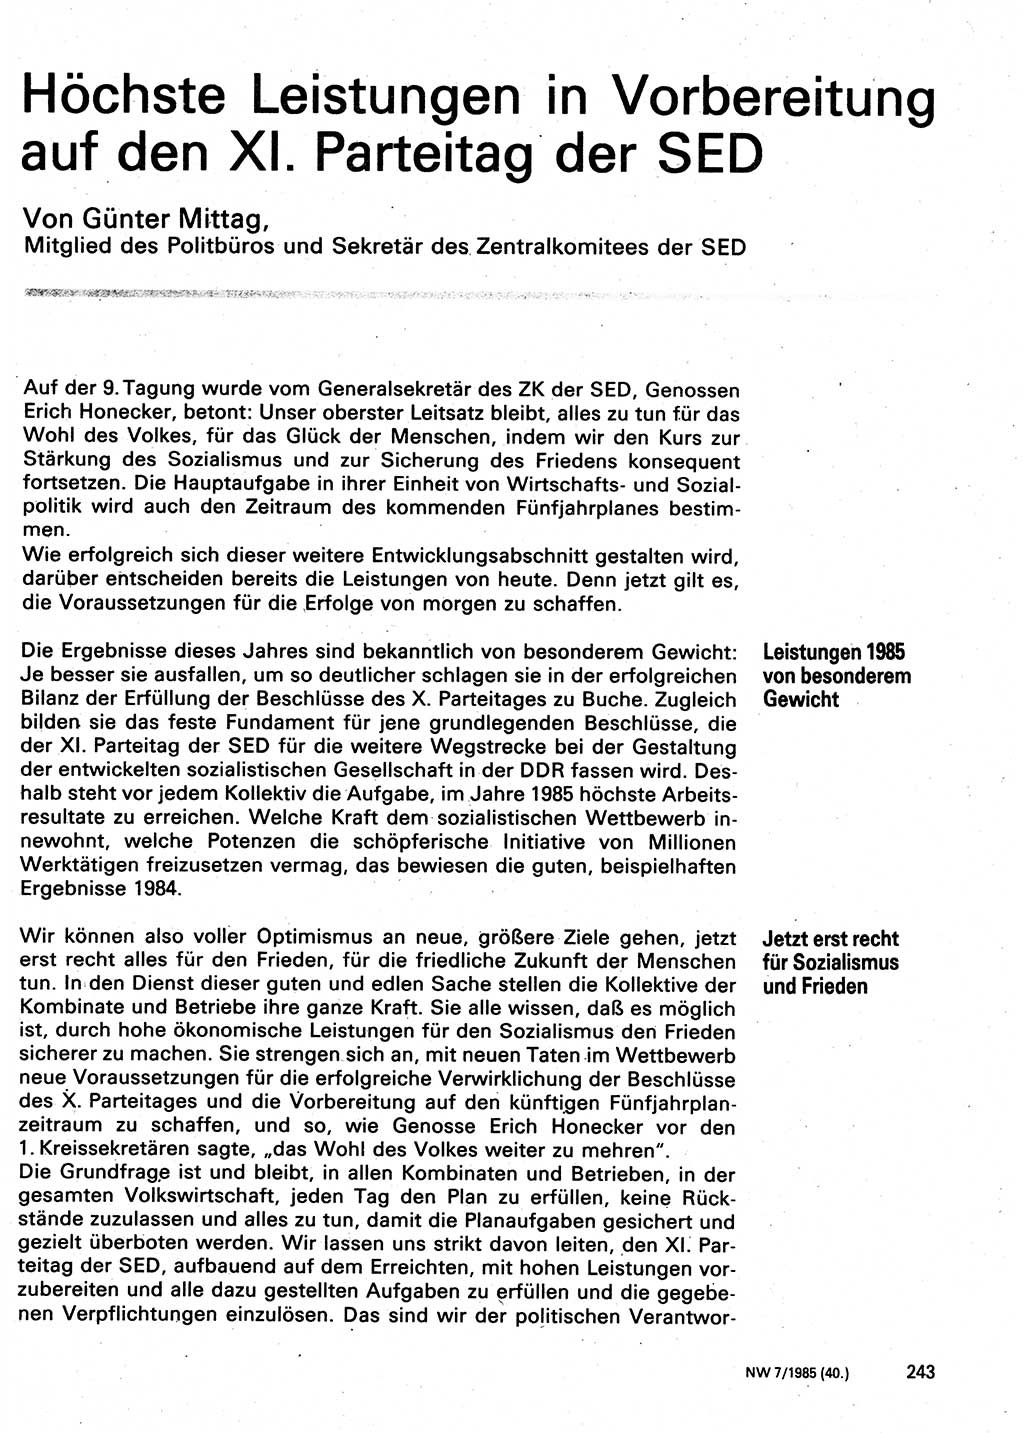 Neuer Weg (NW), Organ des Zentralkomitees (ZK) der SED (Sozialistische Einheitspartei Deutschlands) für Fragen des Parteilebens, 40. Jahrgang [Deutsche Demokratische Republik (DDR)] 1985, Seite 243 (NW ZK SED DDR 1985, S. 243)